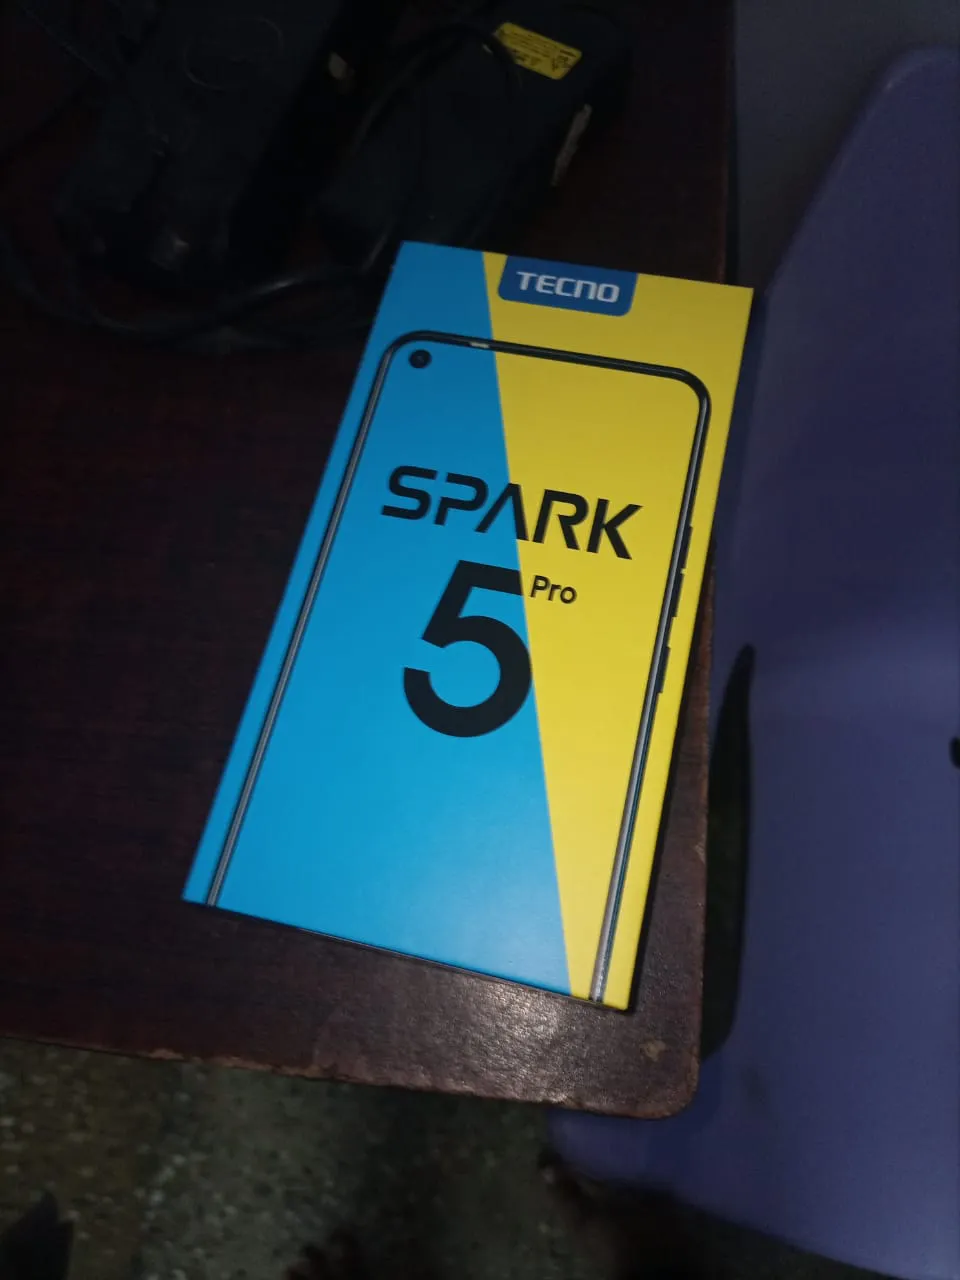 Techno spark 5 pro 4 gb 32 gb new surf box open urgent sale - photo 2